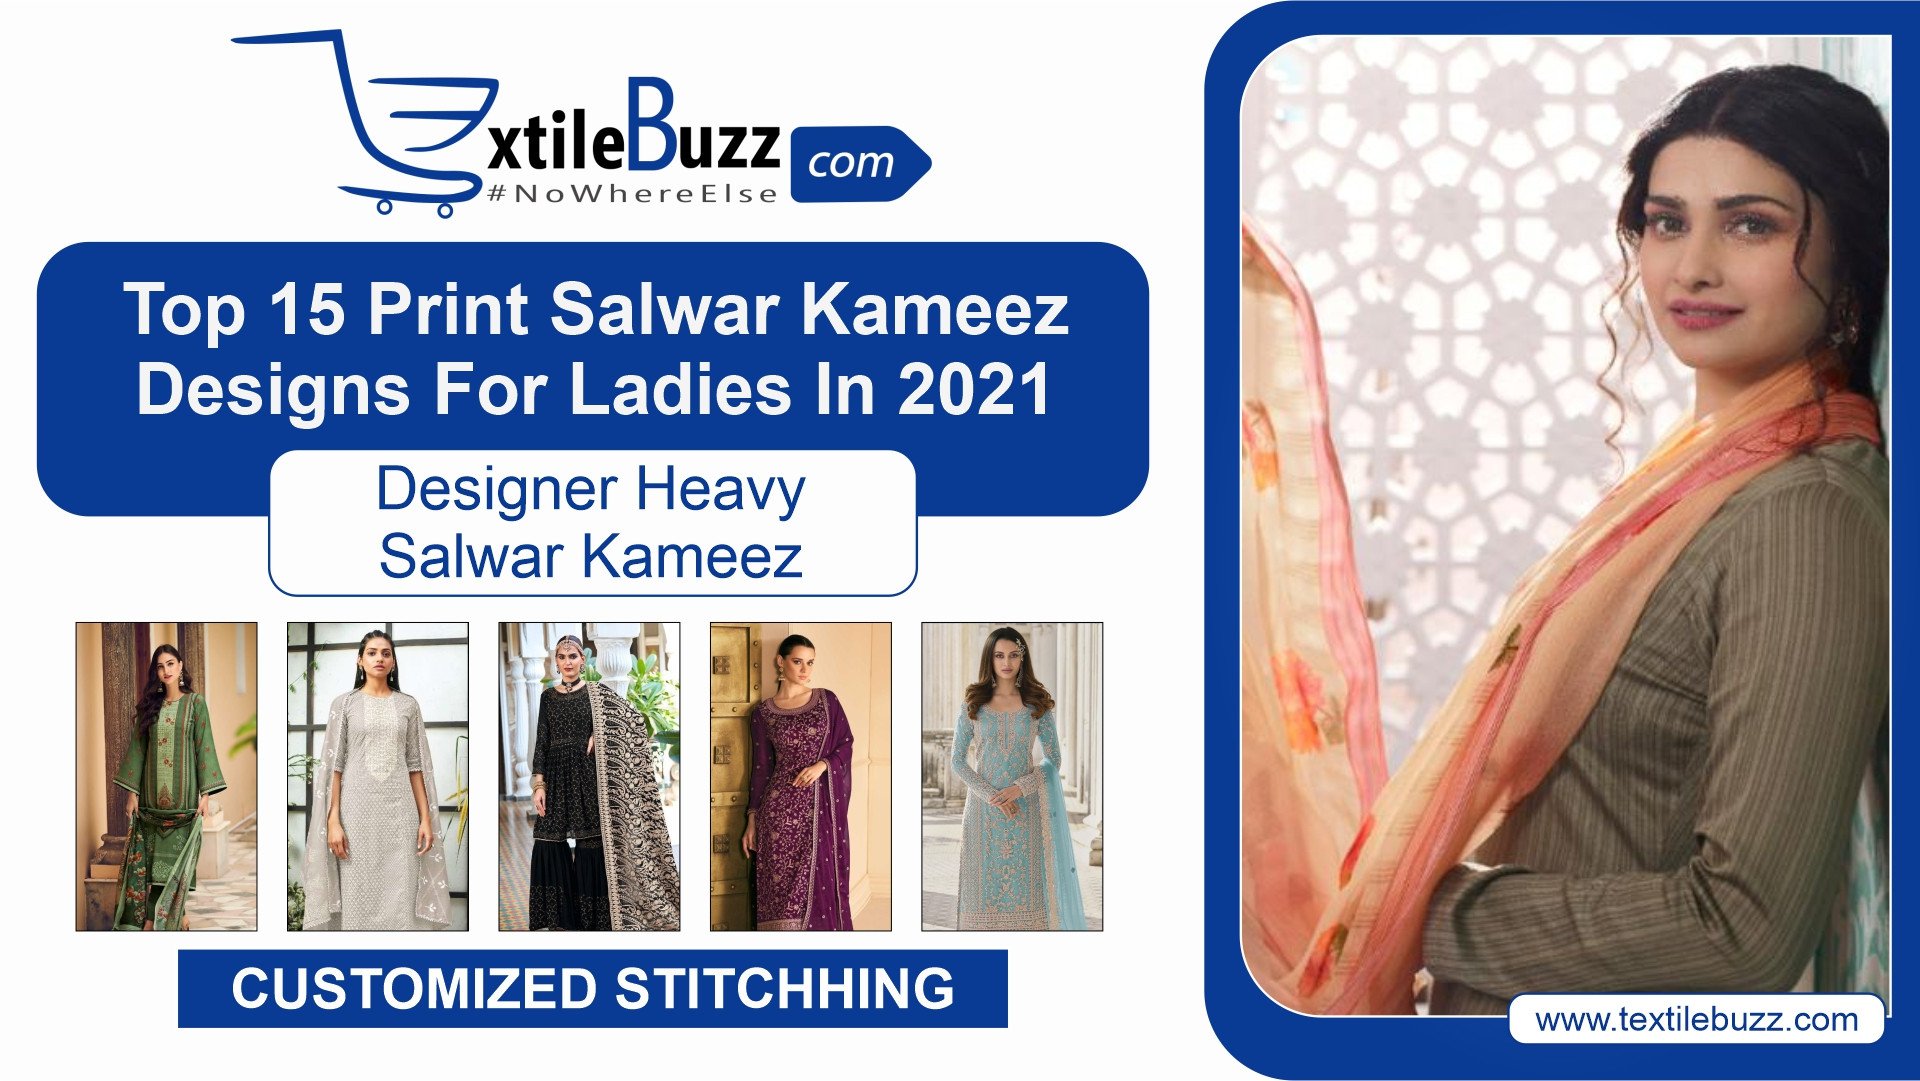 Top 15 print salwar kameez designs for ladies in 2021